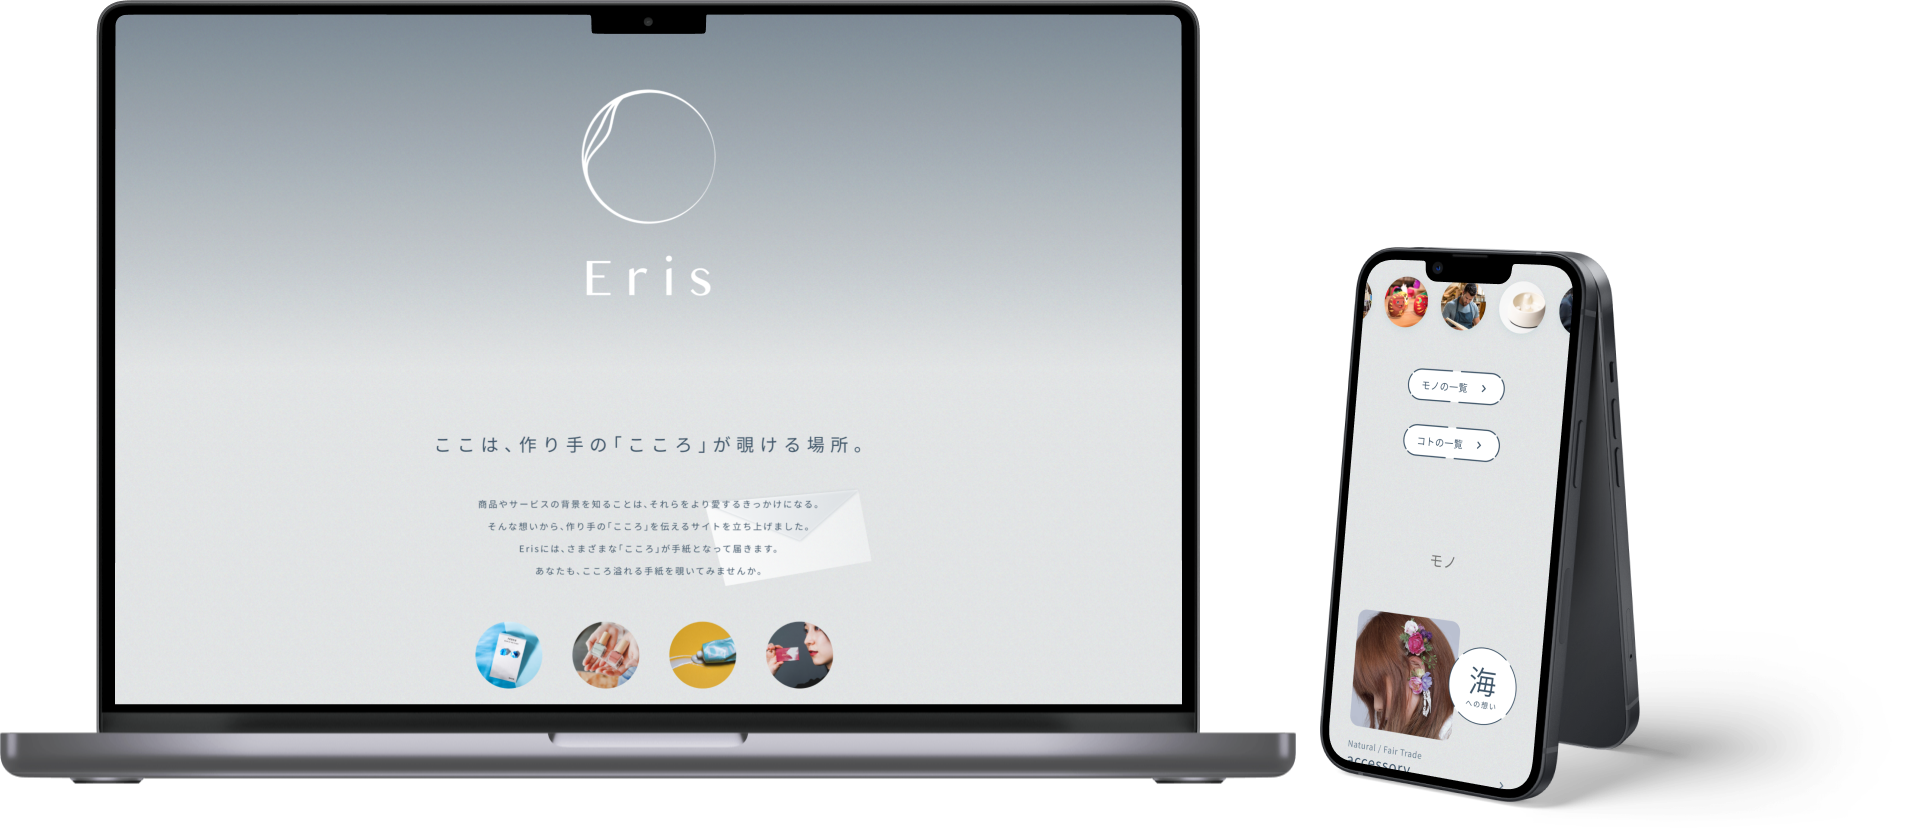 作り手の想いを届けるメディアサイト『Eris』をリリースしました。 - キュリー株式会社